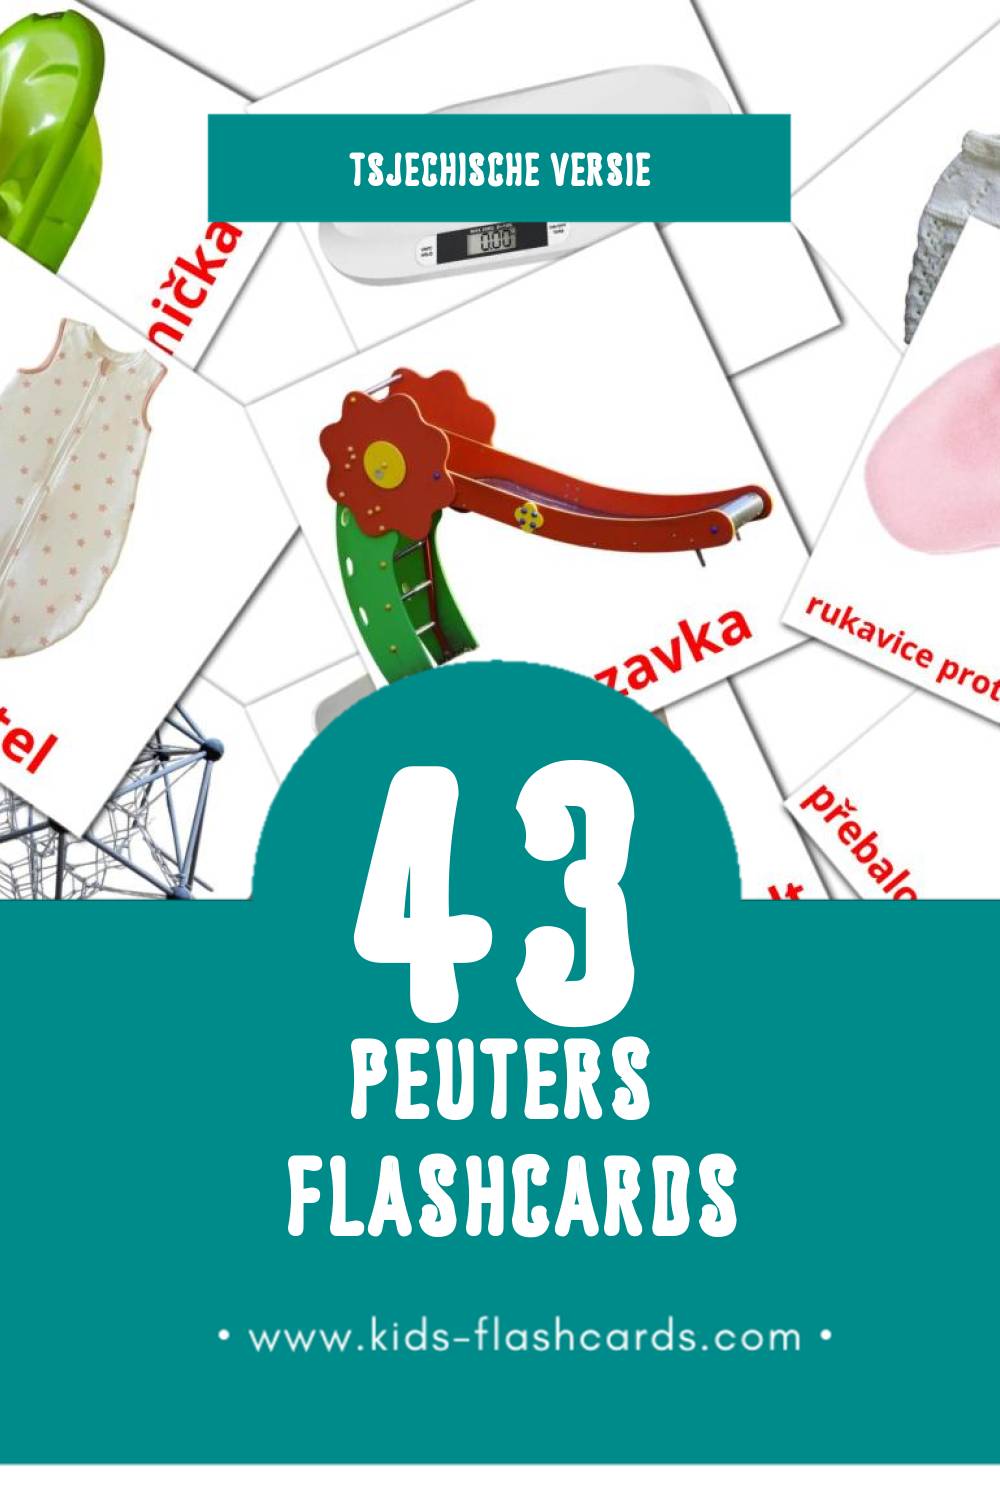 Visuele Dítě Flashcards voor Kleuters (43 kaarten in het Tsjechisch)